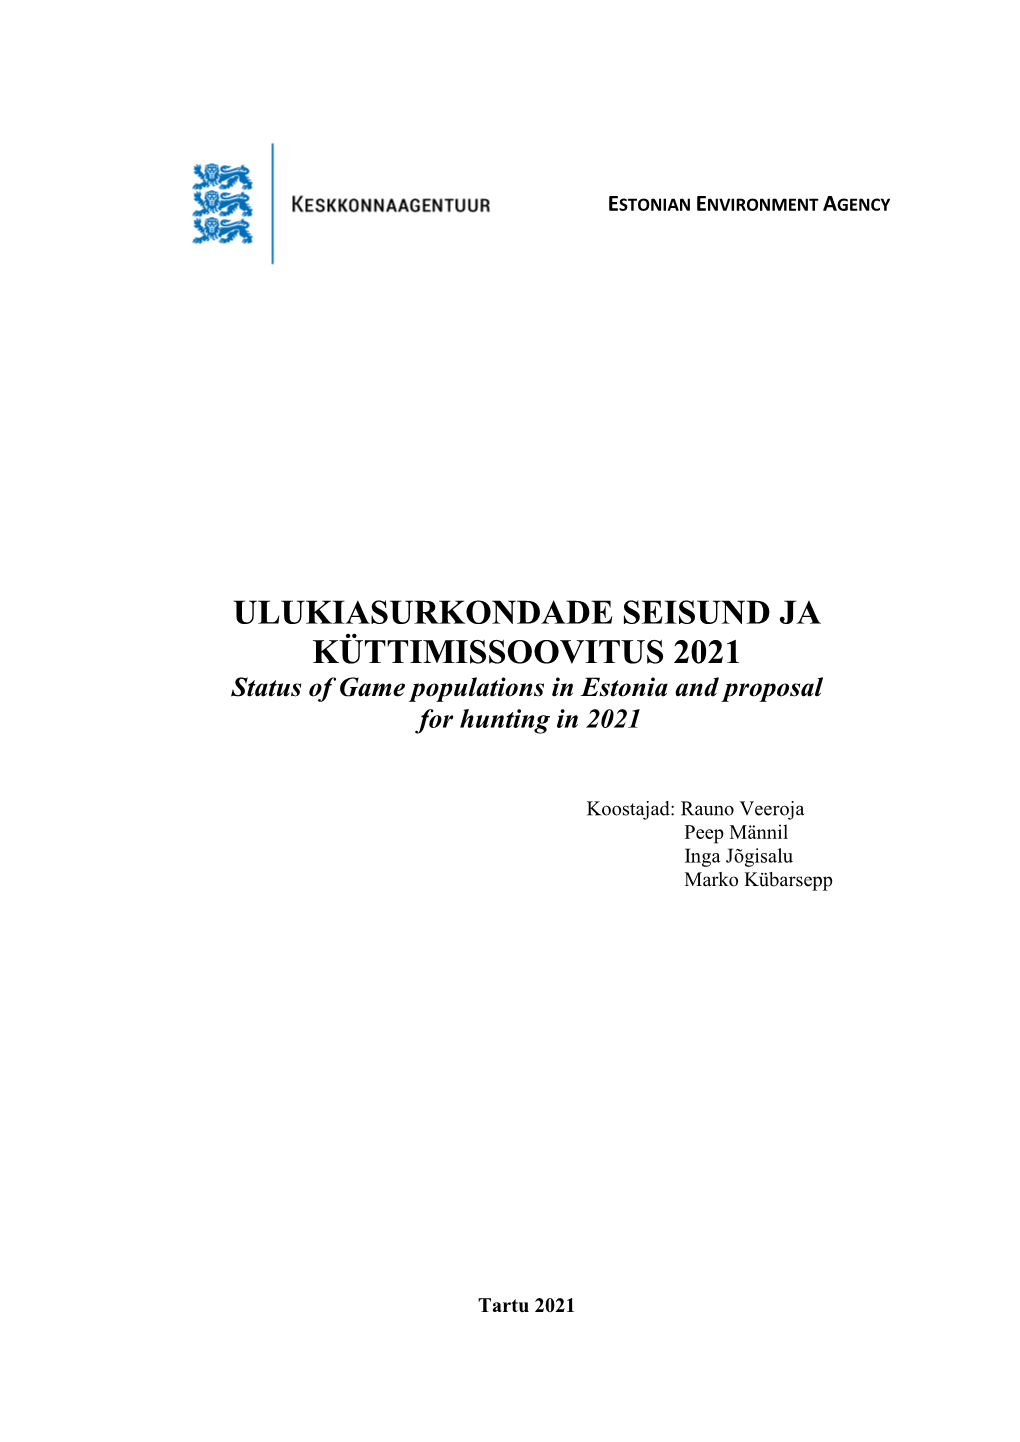 ULUKIASURKONDADE SEISUND JA KÜTTIMISSOOVITUS 2021 Status of Game Populations in Estonia and Proposal for Hunting in 2021